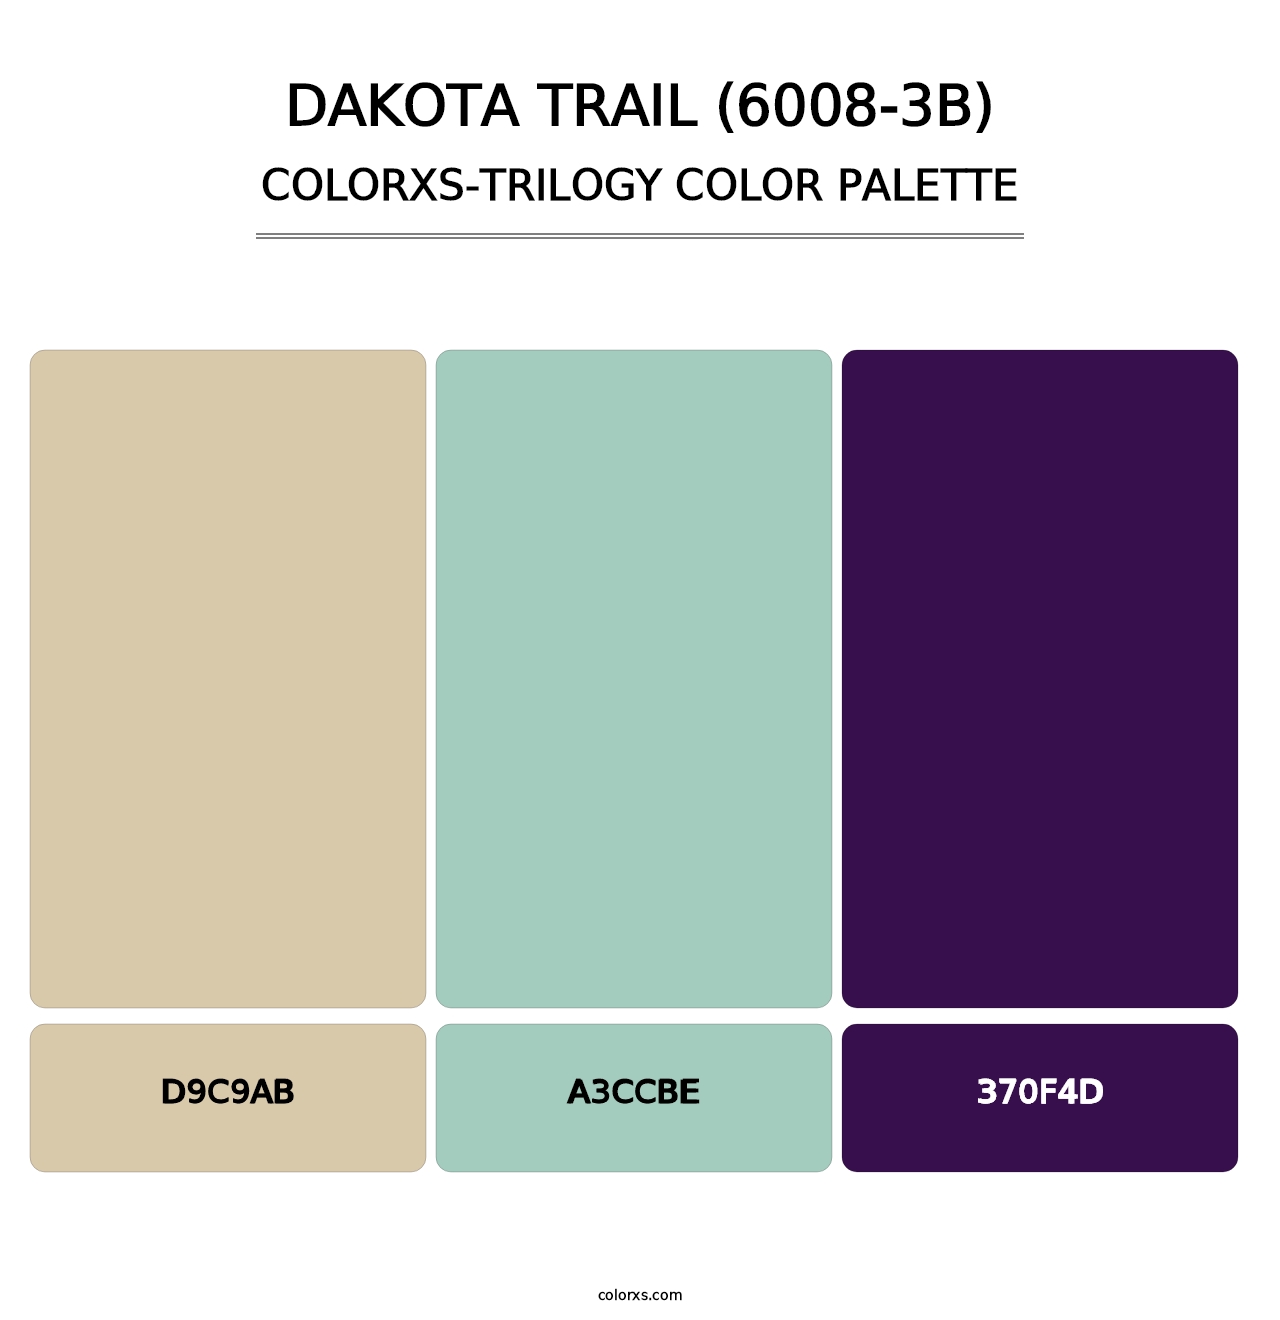 Dakota Trail (6008-3B) - Colorxs Trilogy Palette